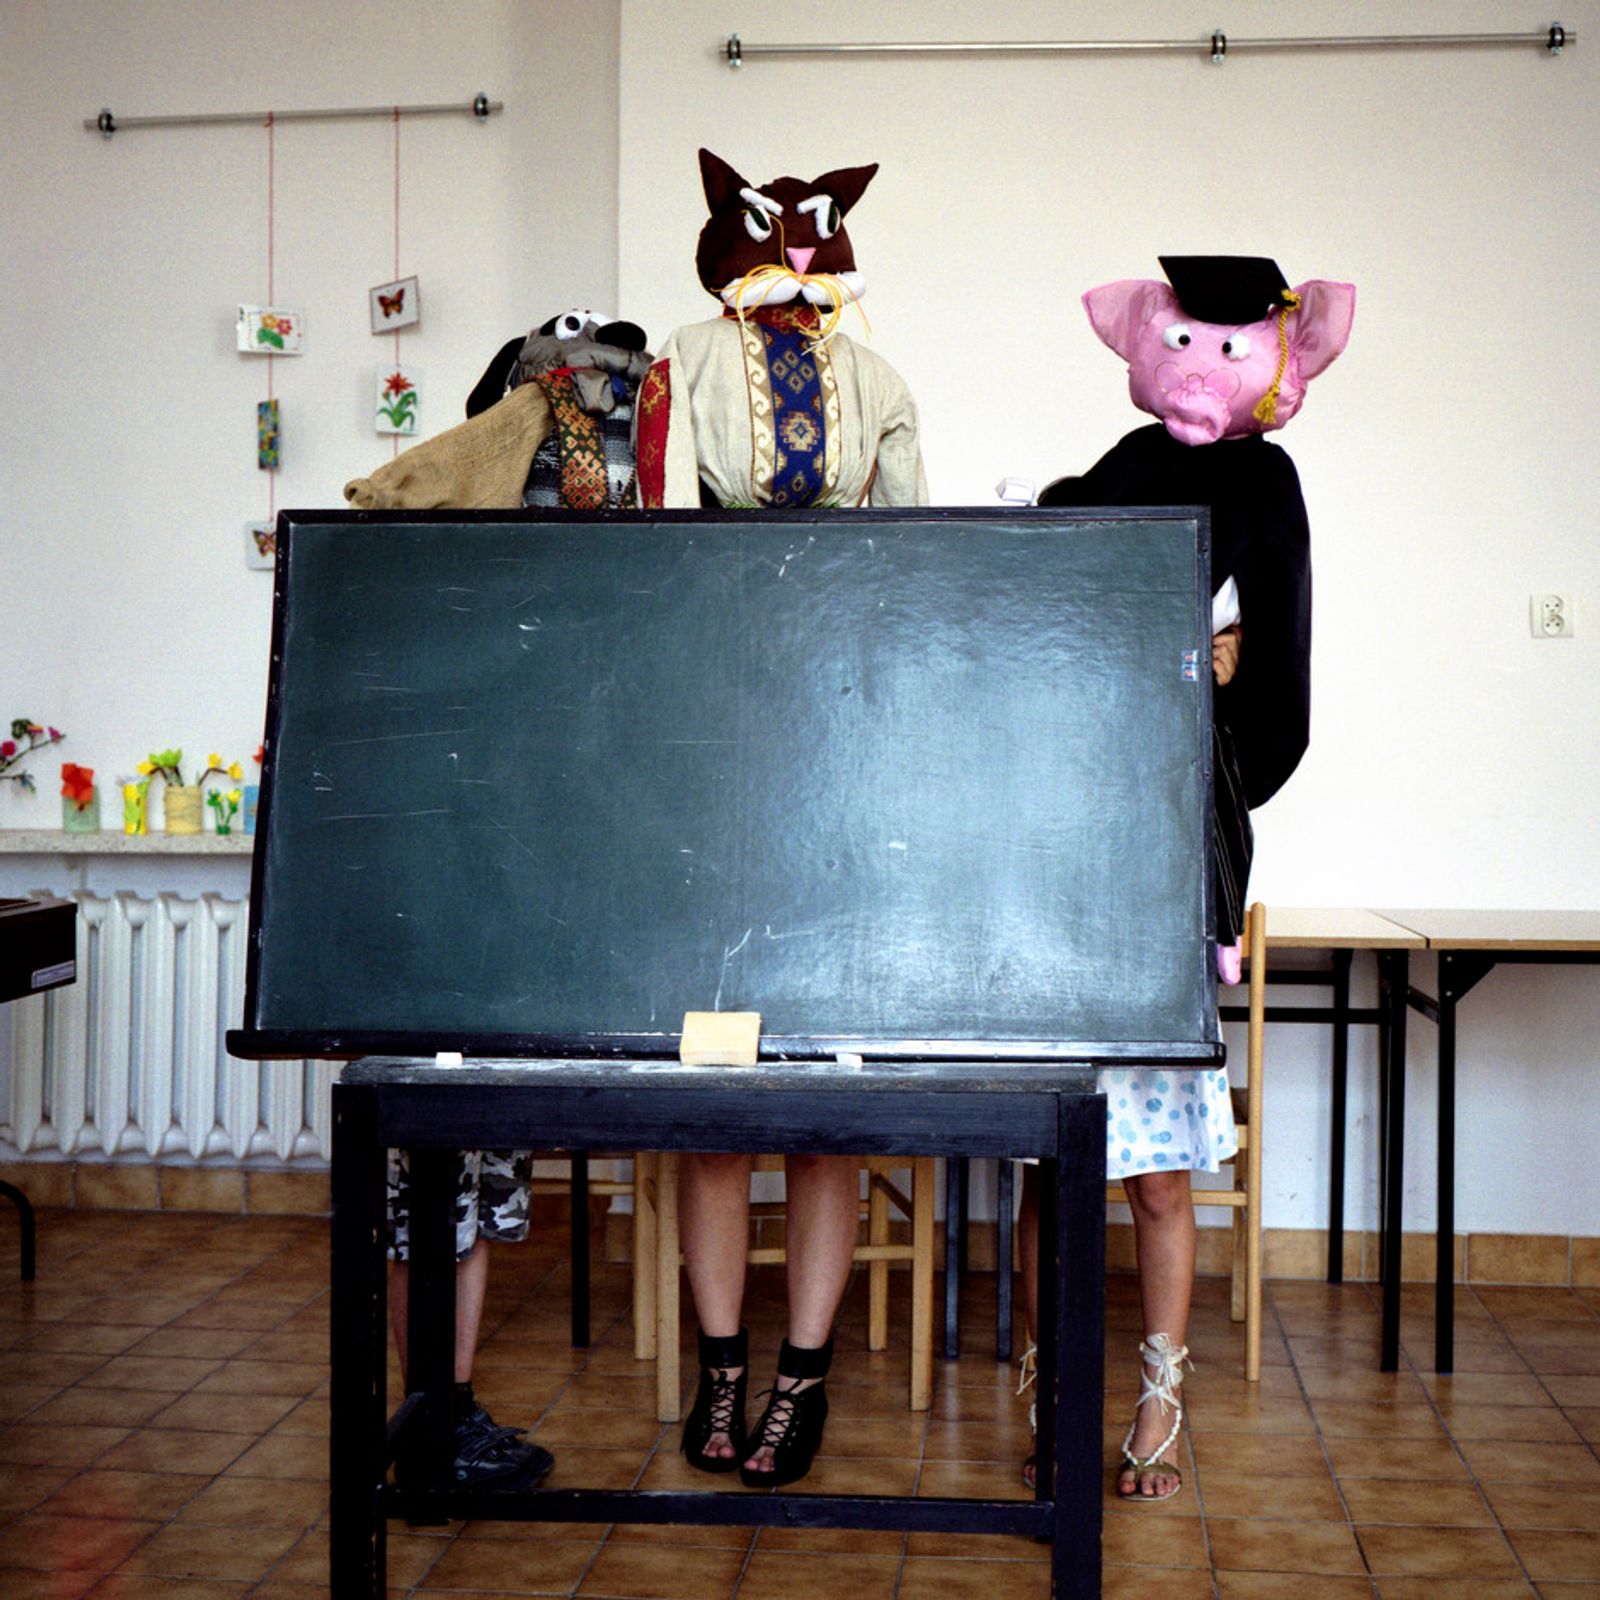 © Gregory Michenaud - Armenian minority in Armenian week-end school, Krakow - Poland